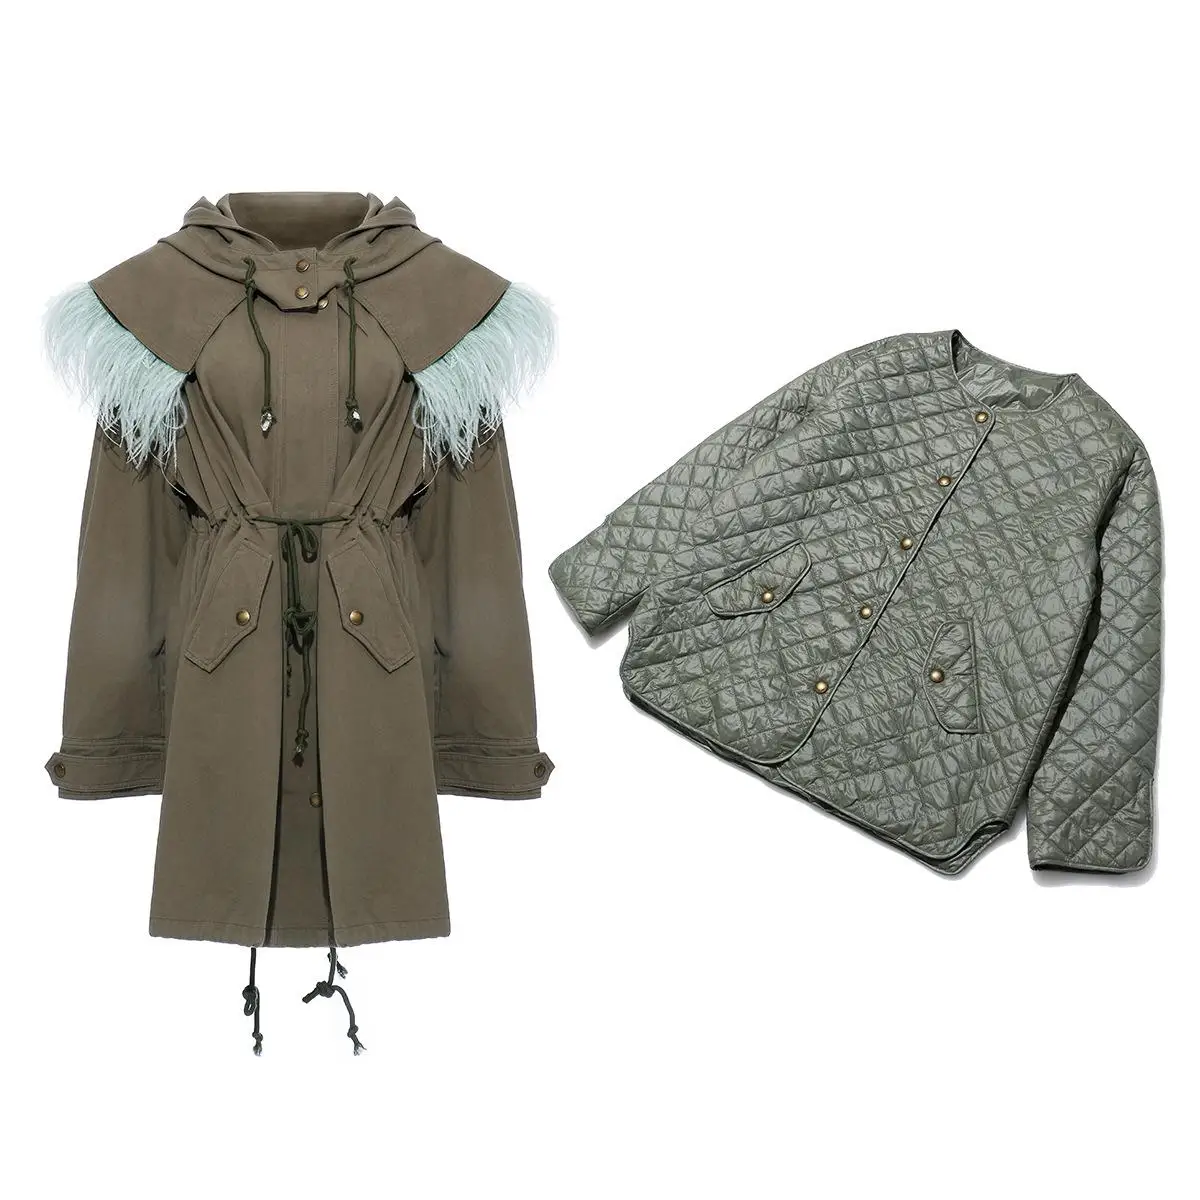 Getвесенняя Женская куртка со съемным мехом страуса с капюшоном, Женское пальто на шнурке, свободные длинные женские пальто с теплой подкладкой, зима - Цвет: with warm lining